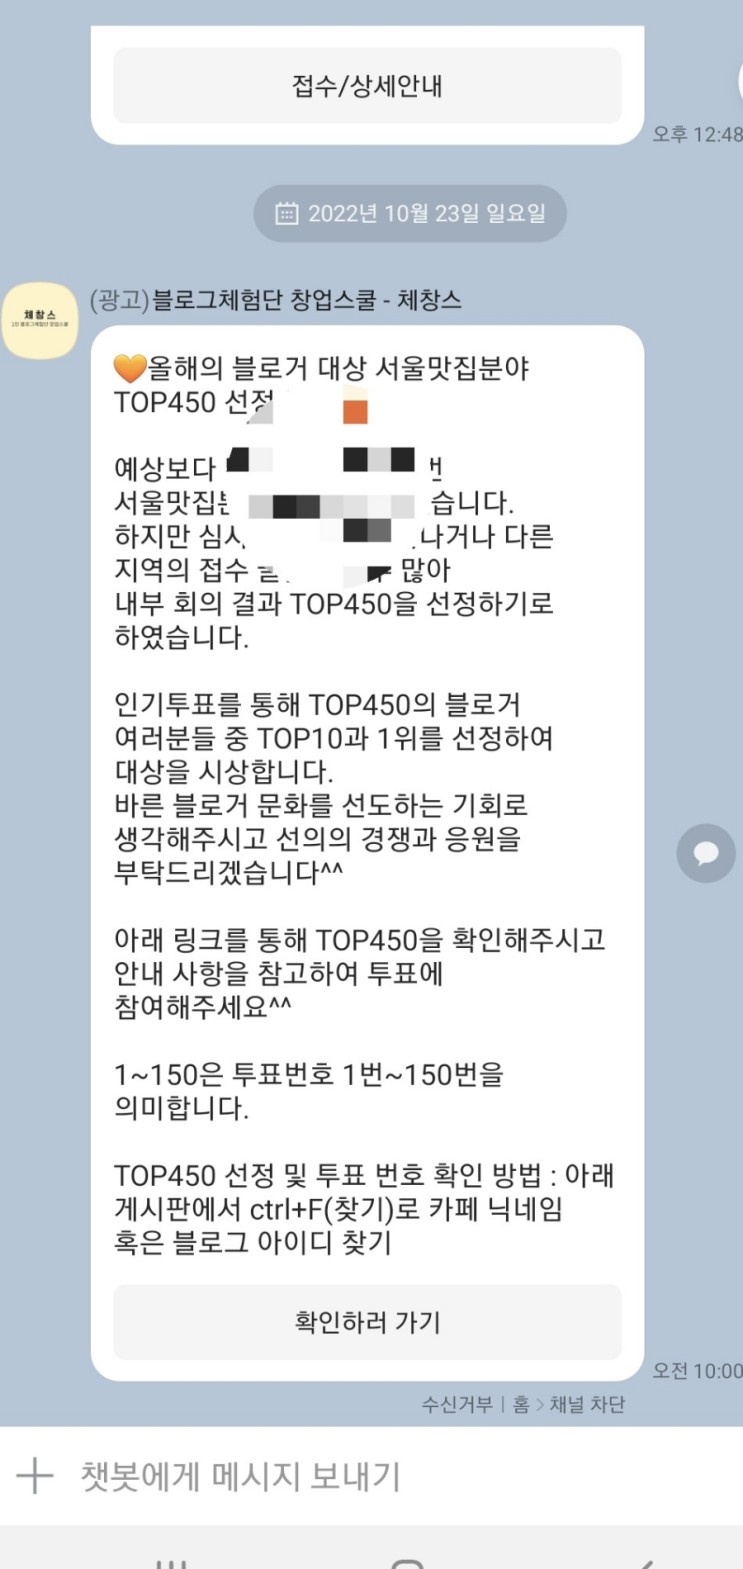 [올해의 블로거 대상]TOP450선정!!!다음은 투표